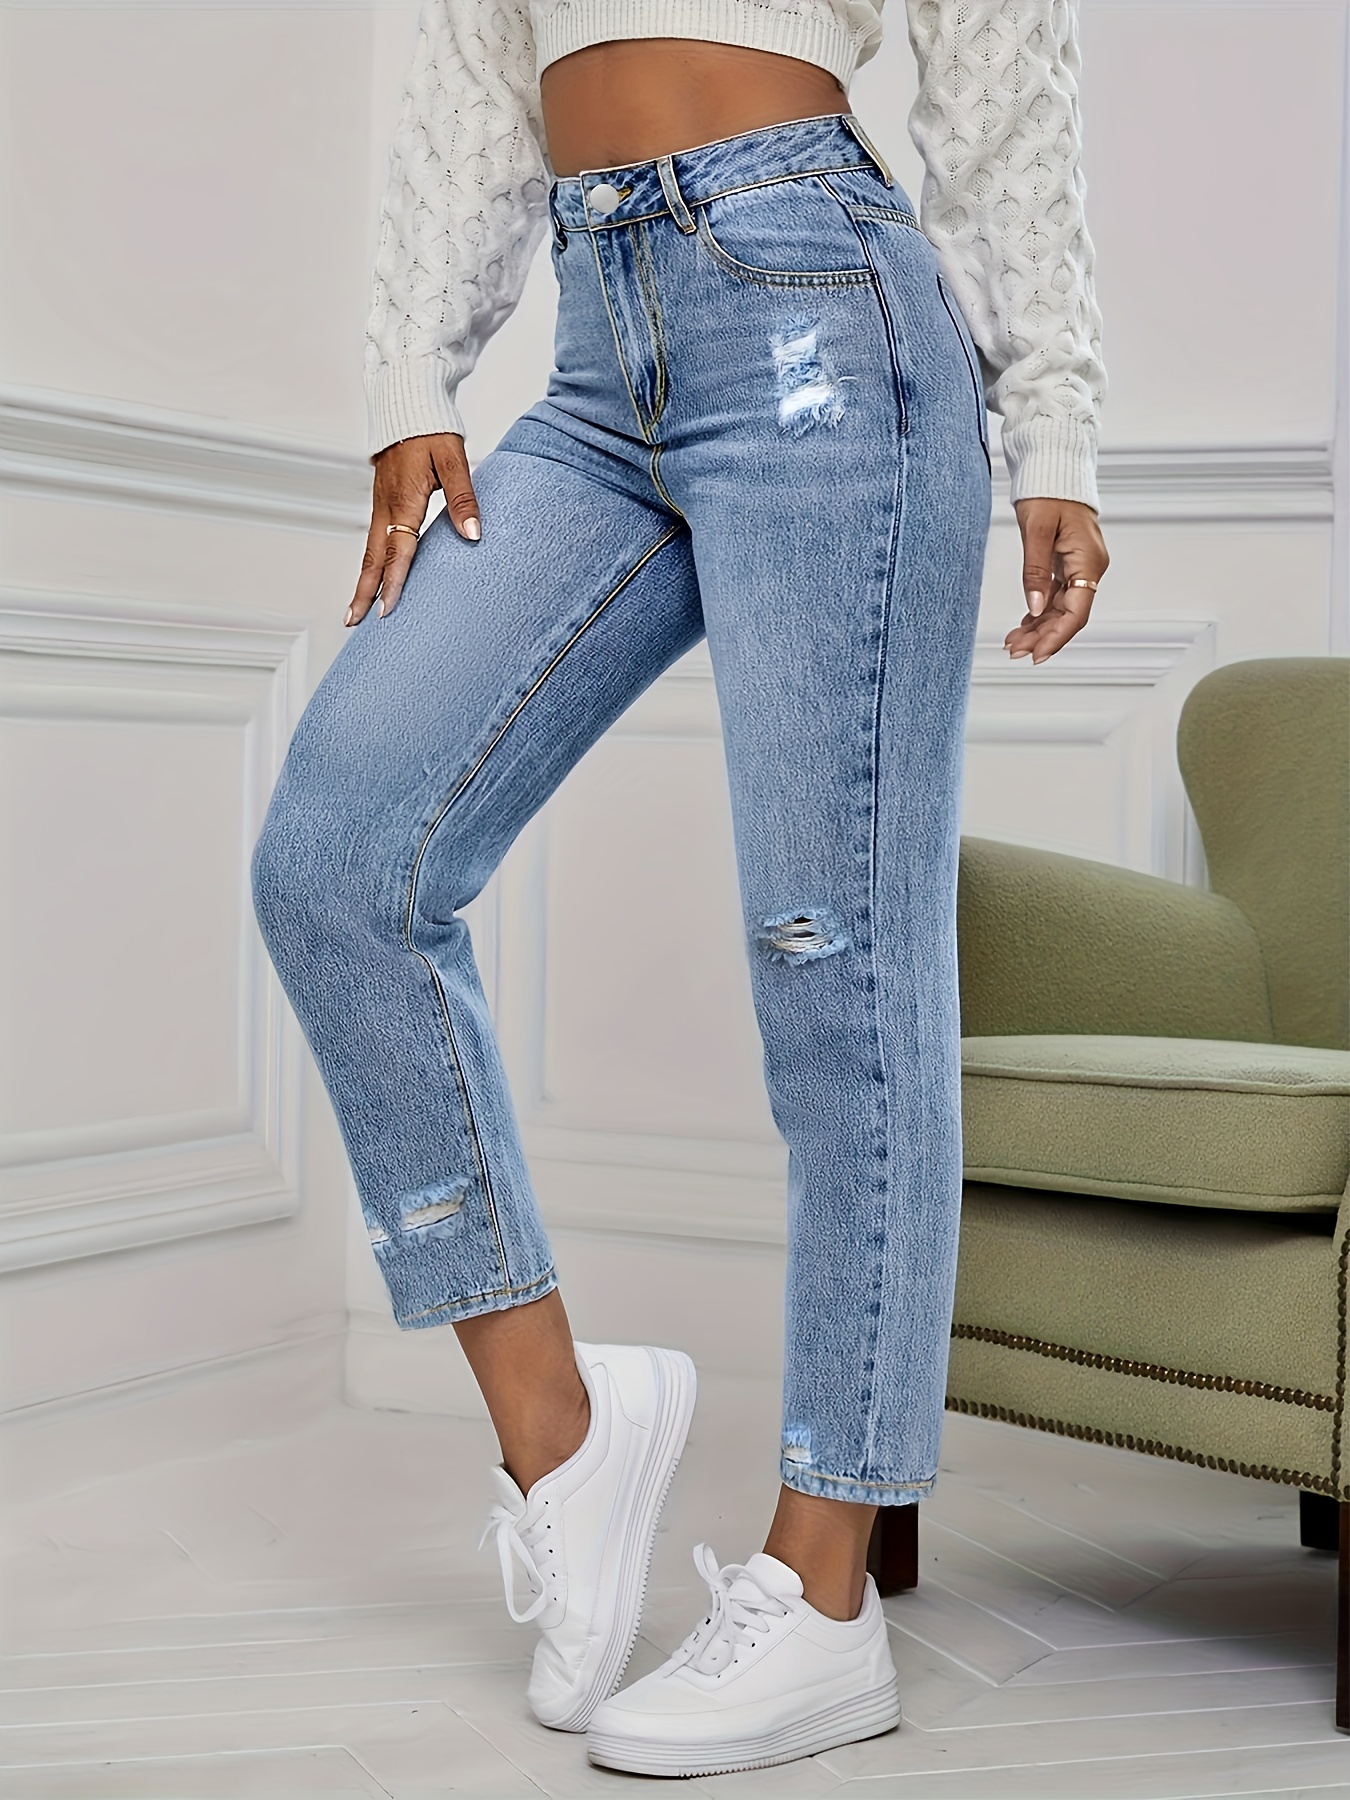 Jeans con detalle desgarrado de lavado con lejía, jeans de mamá de talle  alto con estampado de estrellas y desgastados, jeans de mezclilla y ropa  para